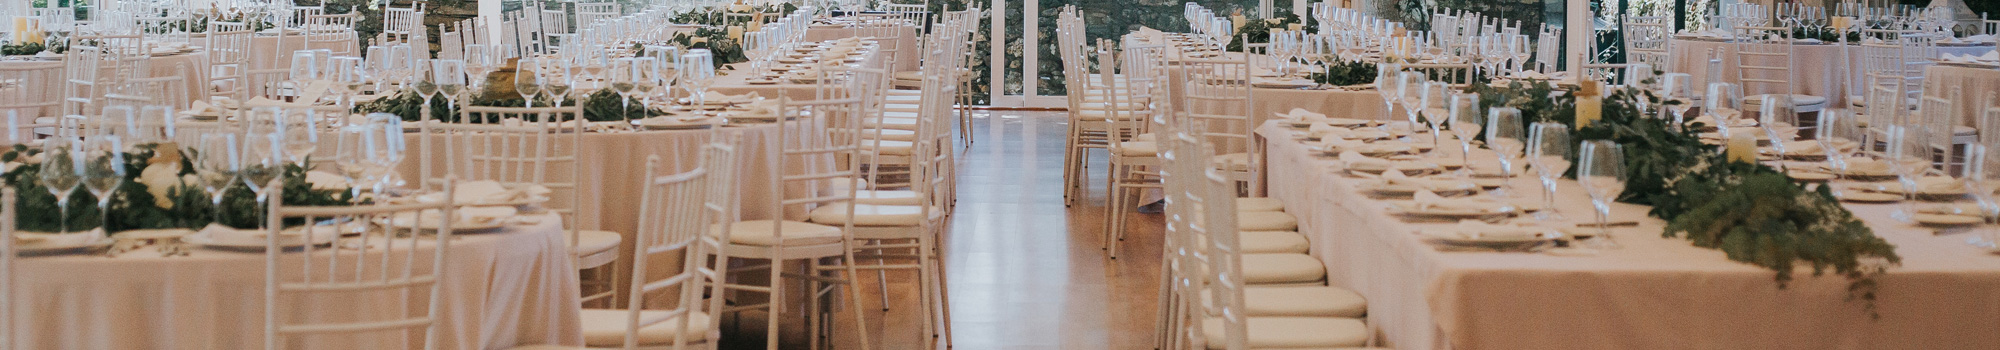 Mesas en la coordinación de bodas en Cantabria